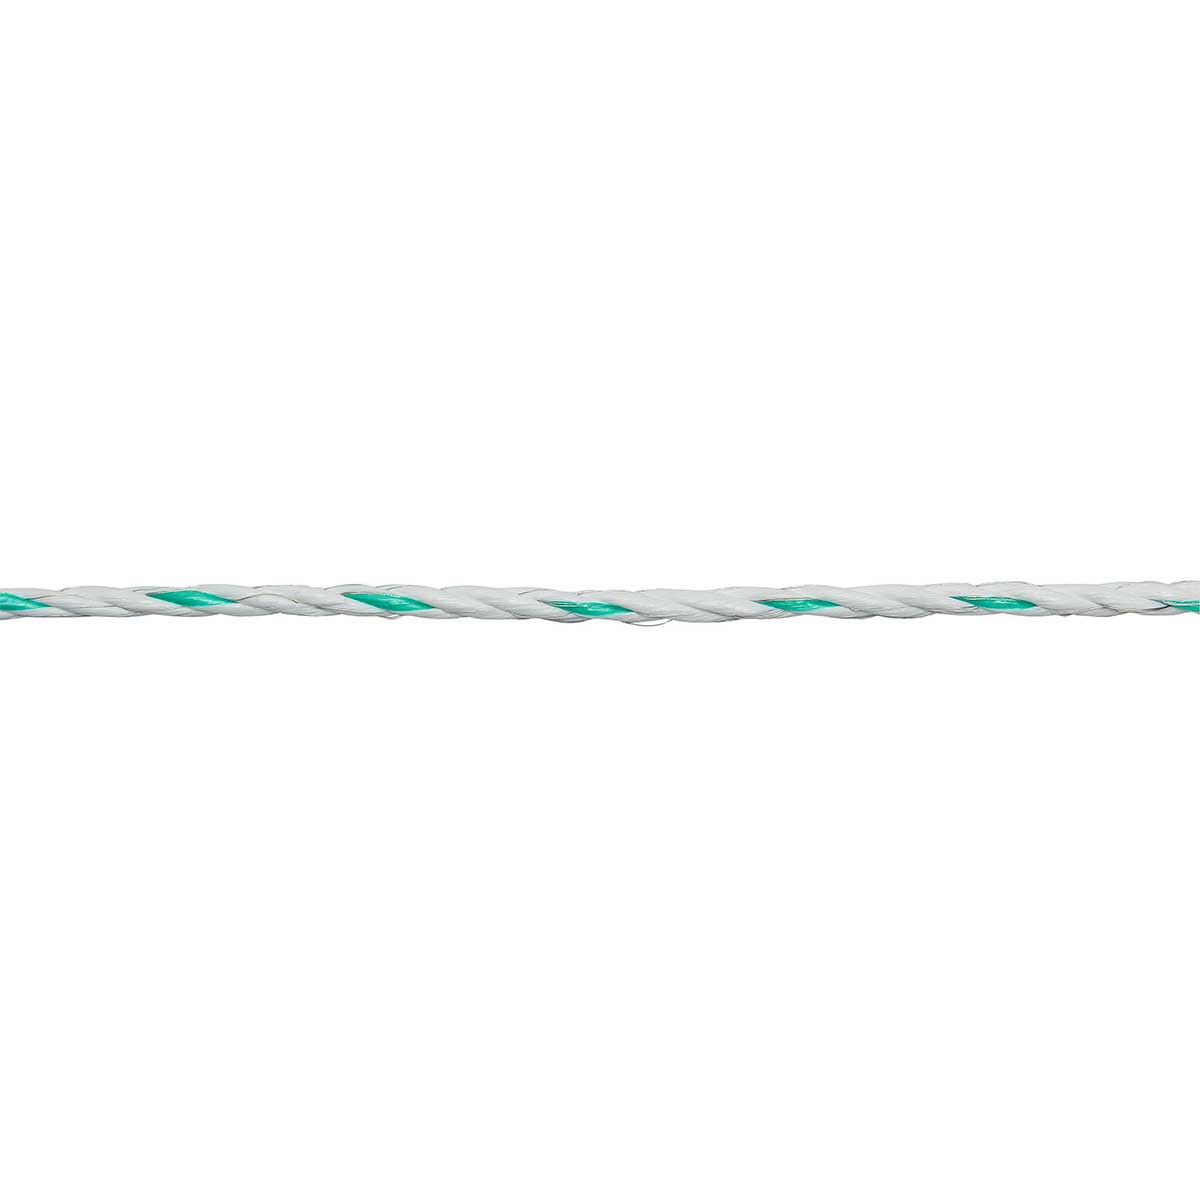 Ako villanypásztor kötél PremiumLine 200m, Ø 6,5mm, 6x0.20 Niro + 3x0.25 réz, fehér-zöld